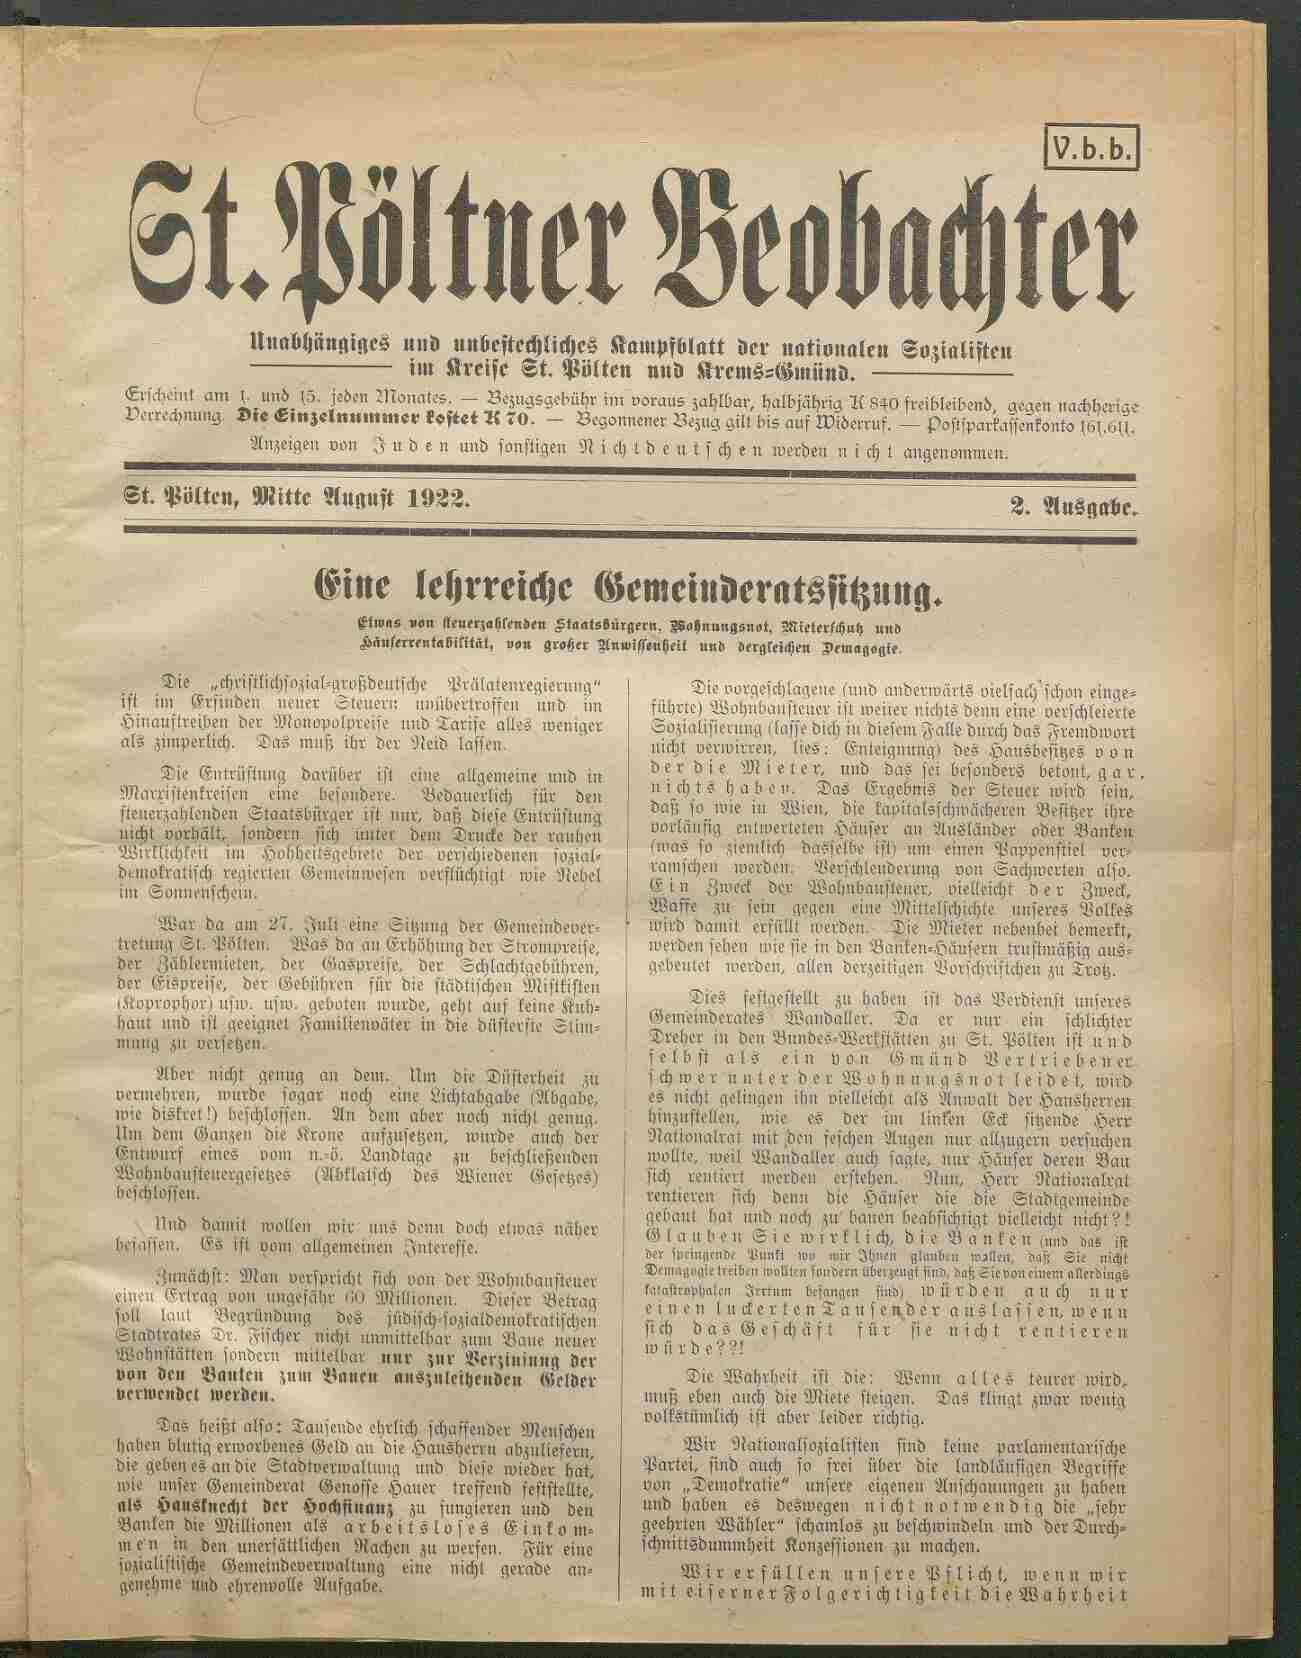 St. Pöltner Beobachter, 1922, Ausgabe 2, S.1, ANNO/ÖNB